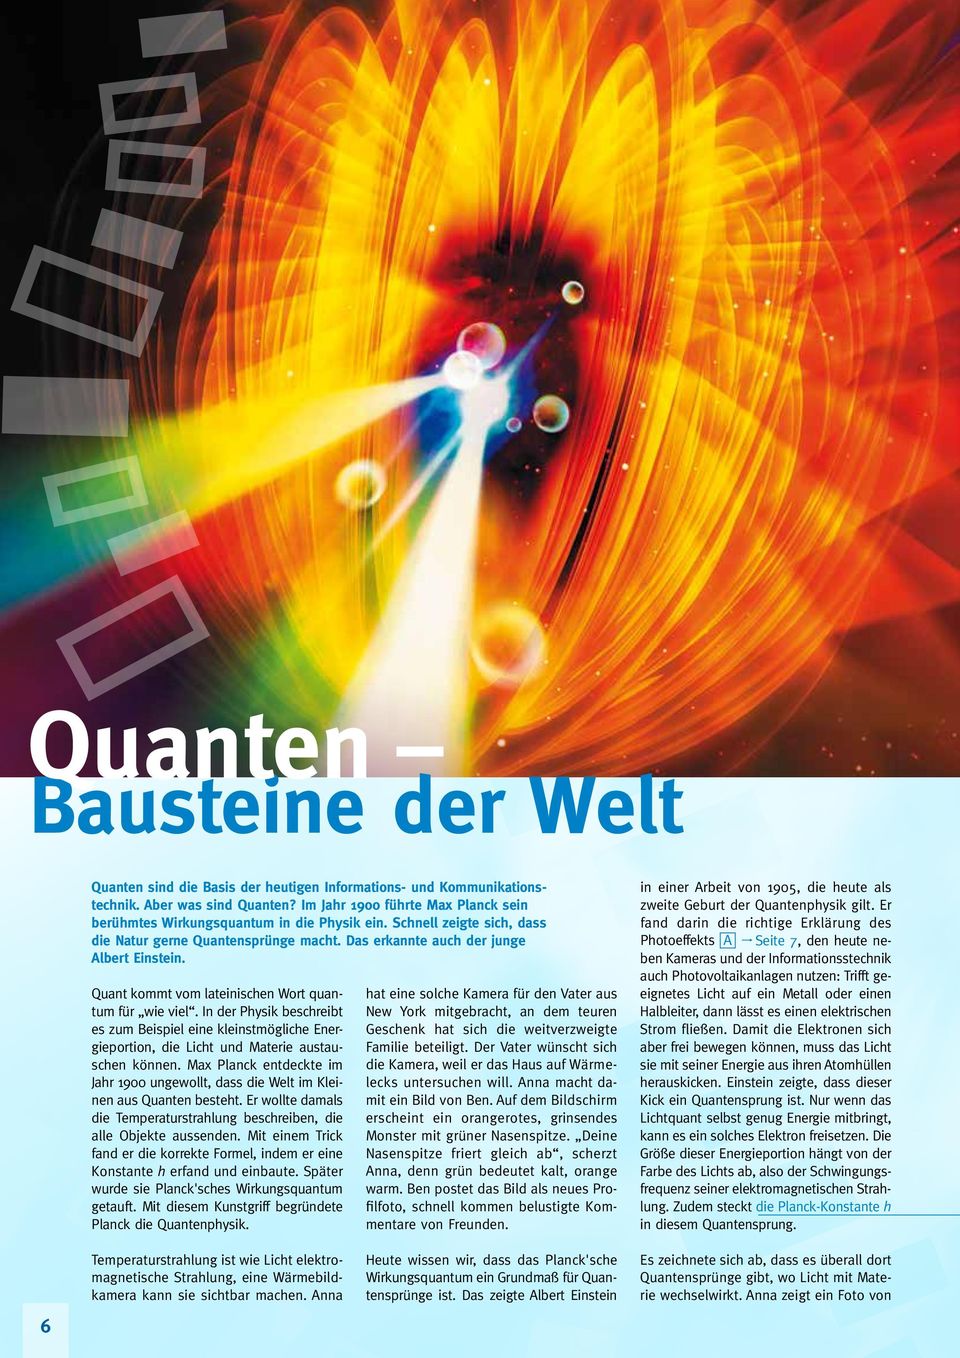 Quant kommt vom lateinischen Wort quantum für wie viel. In der Physik beschreibt es zum Beispiel eine kleinstmögliche Energieportion, die Licht und Materie austauschen können.